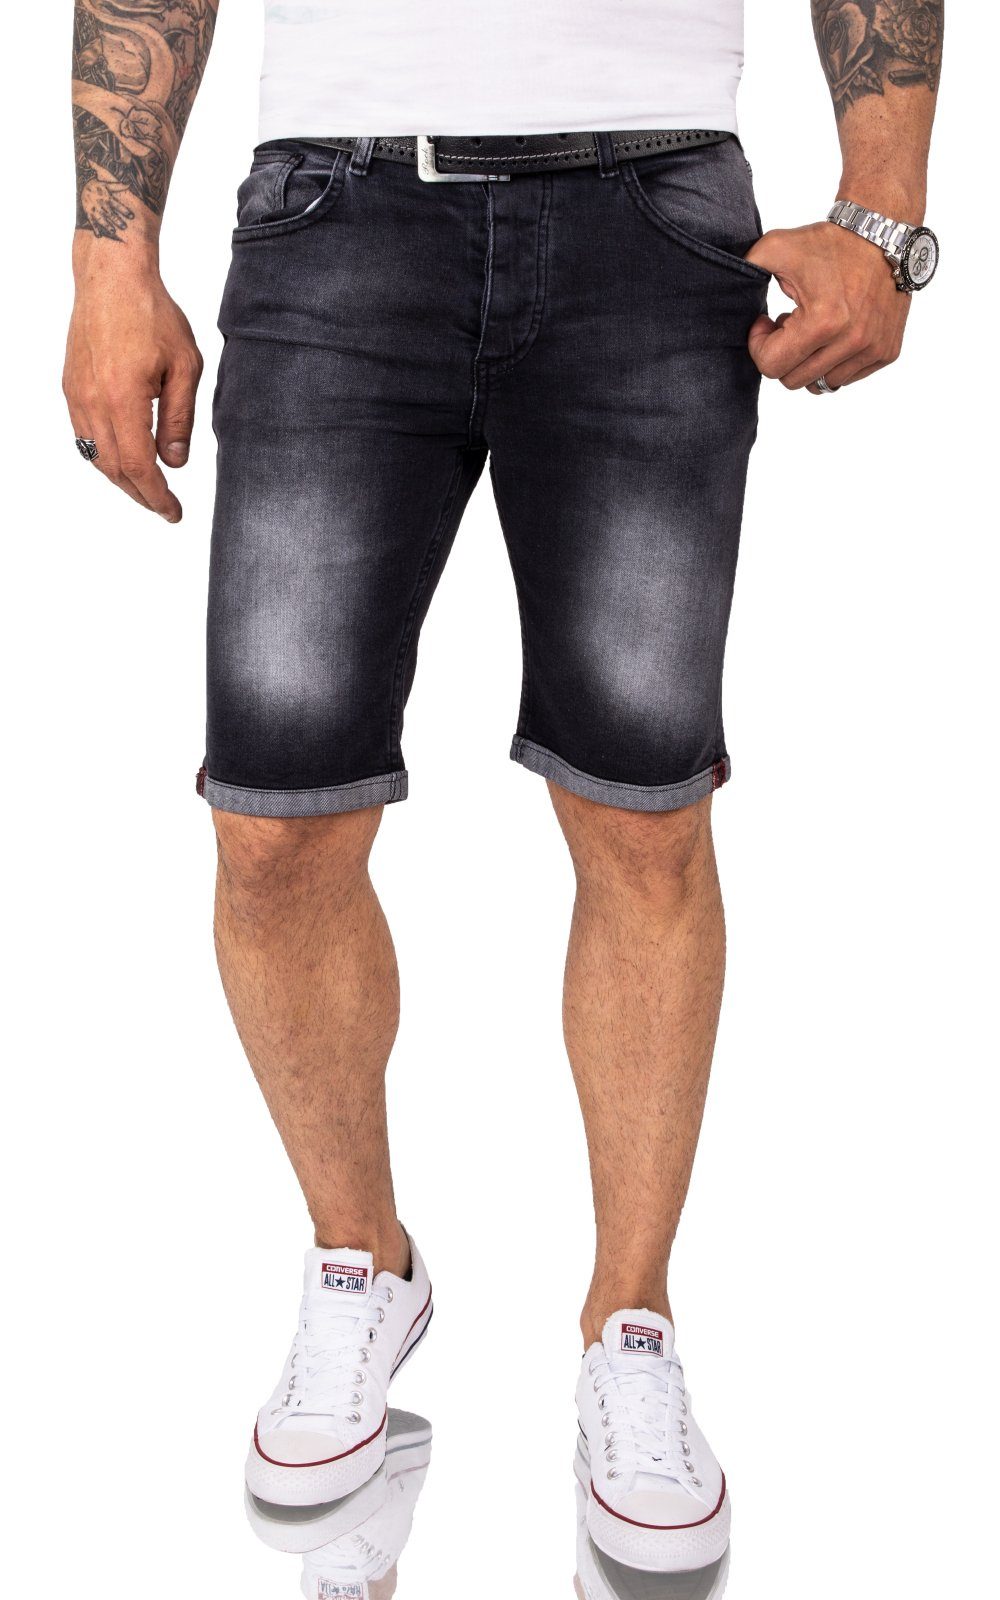 Jeansshorts Denim Herren Dunkelgrau RC-2214 Rock Creek Shorts